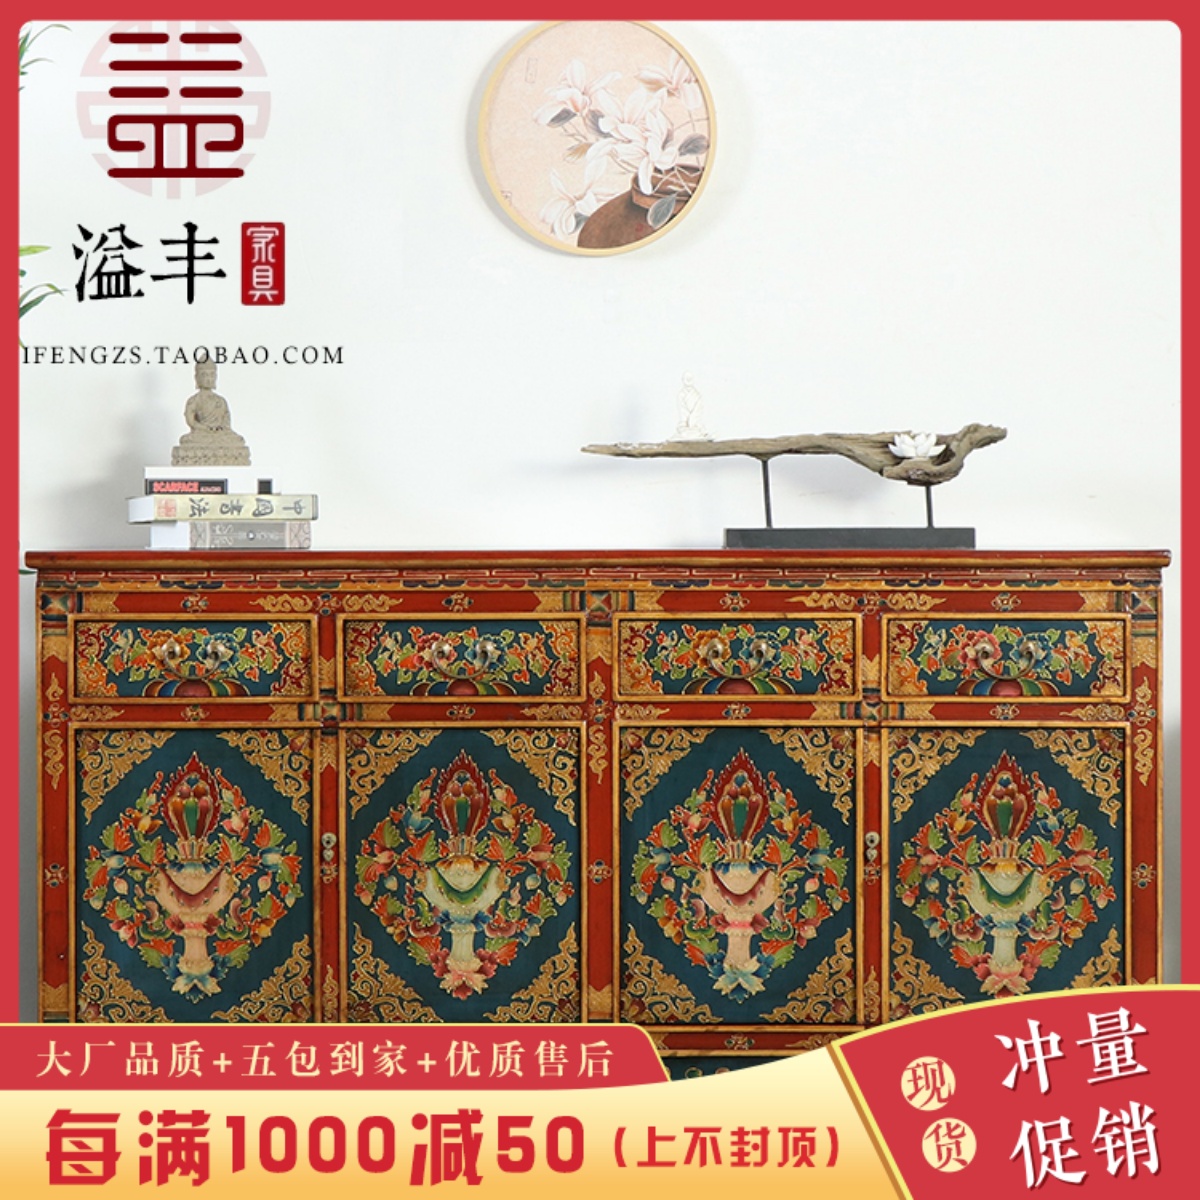 现代新中式仿古典实木手工彩绘玄关柜明清做旧复古手绘装饰餐边柜